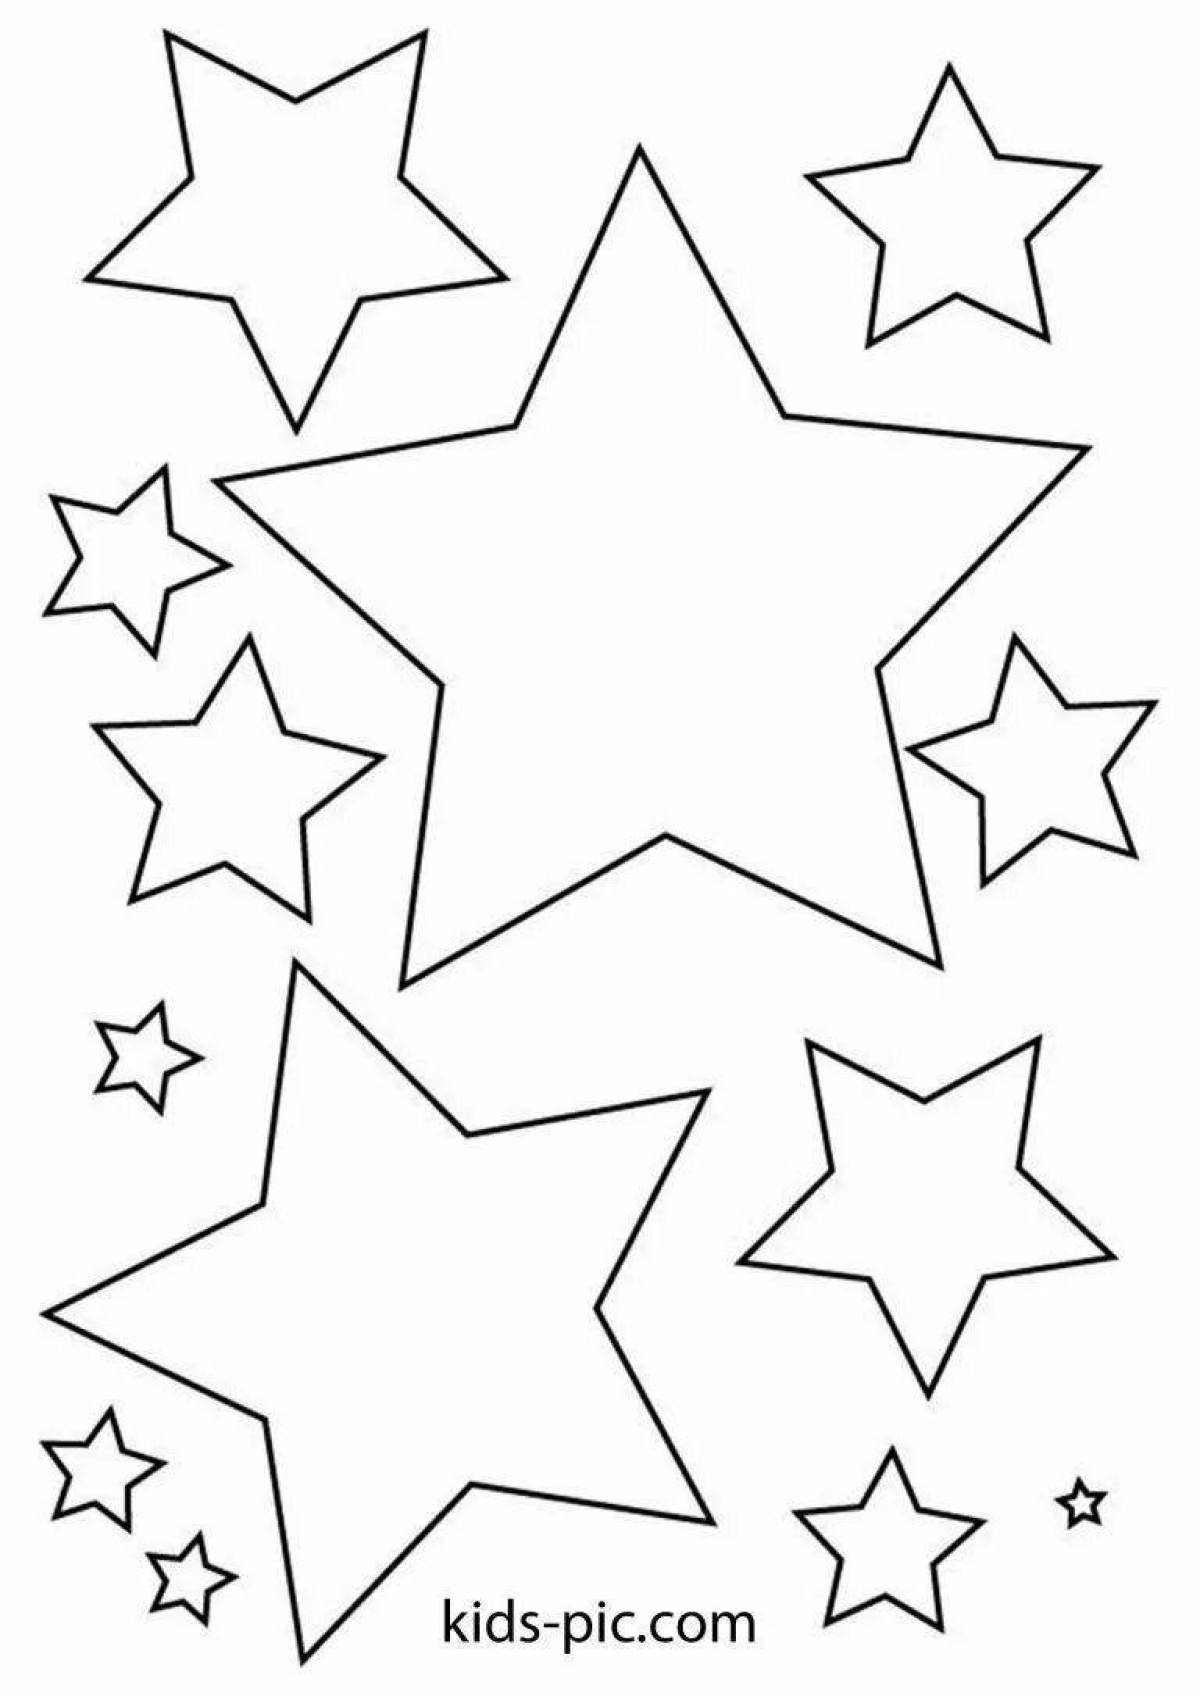 Coloring fun star for preschoolers